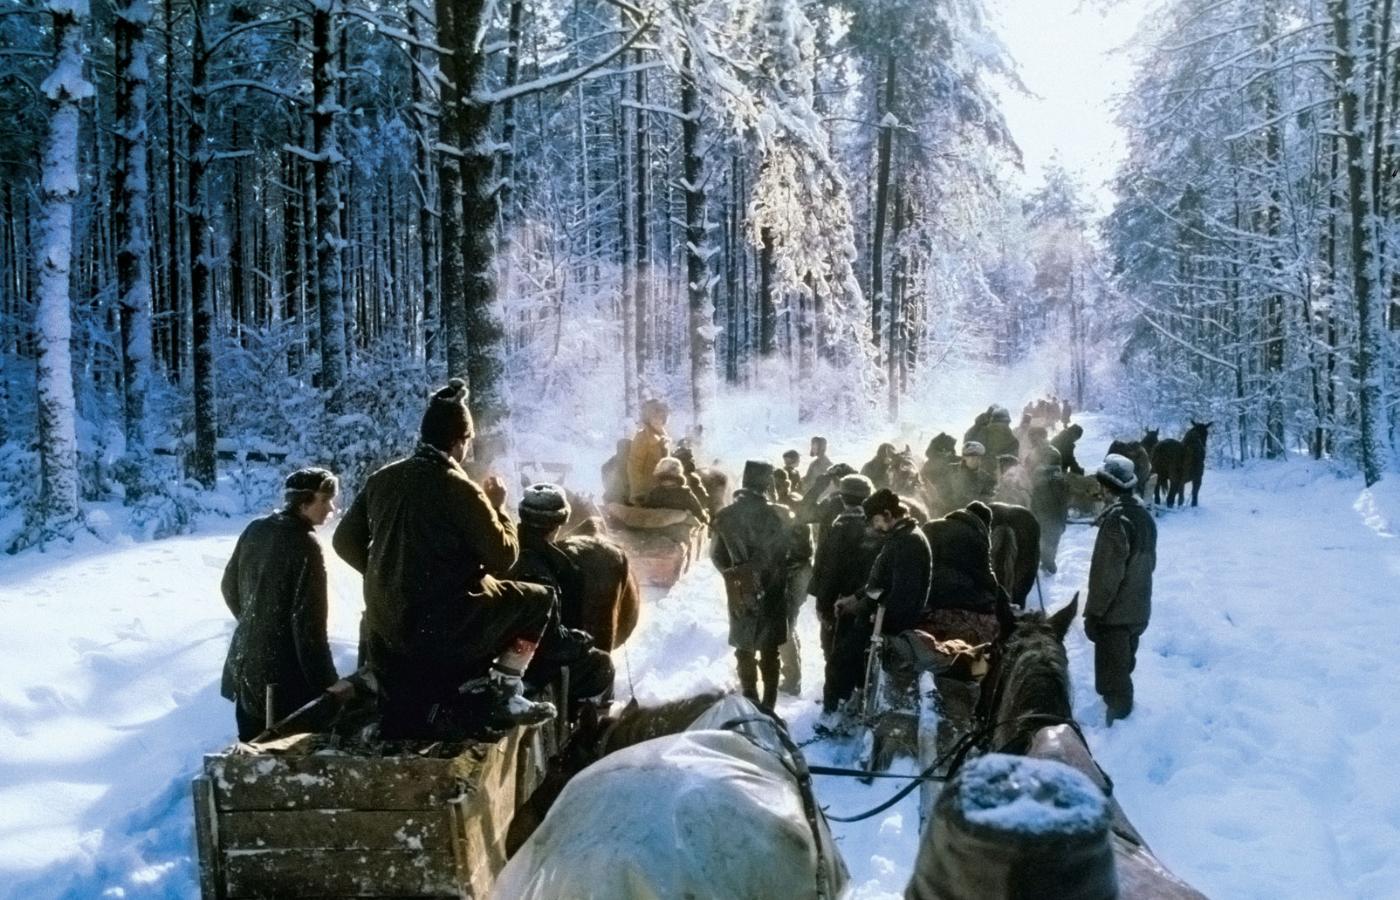 Zimowe polowanie zorganizowane dla turystów dewizowych, lata 70.